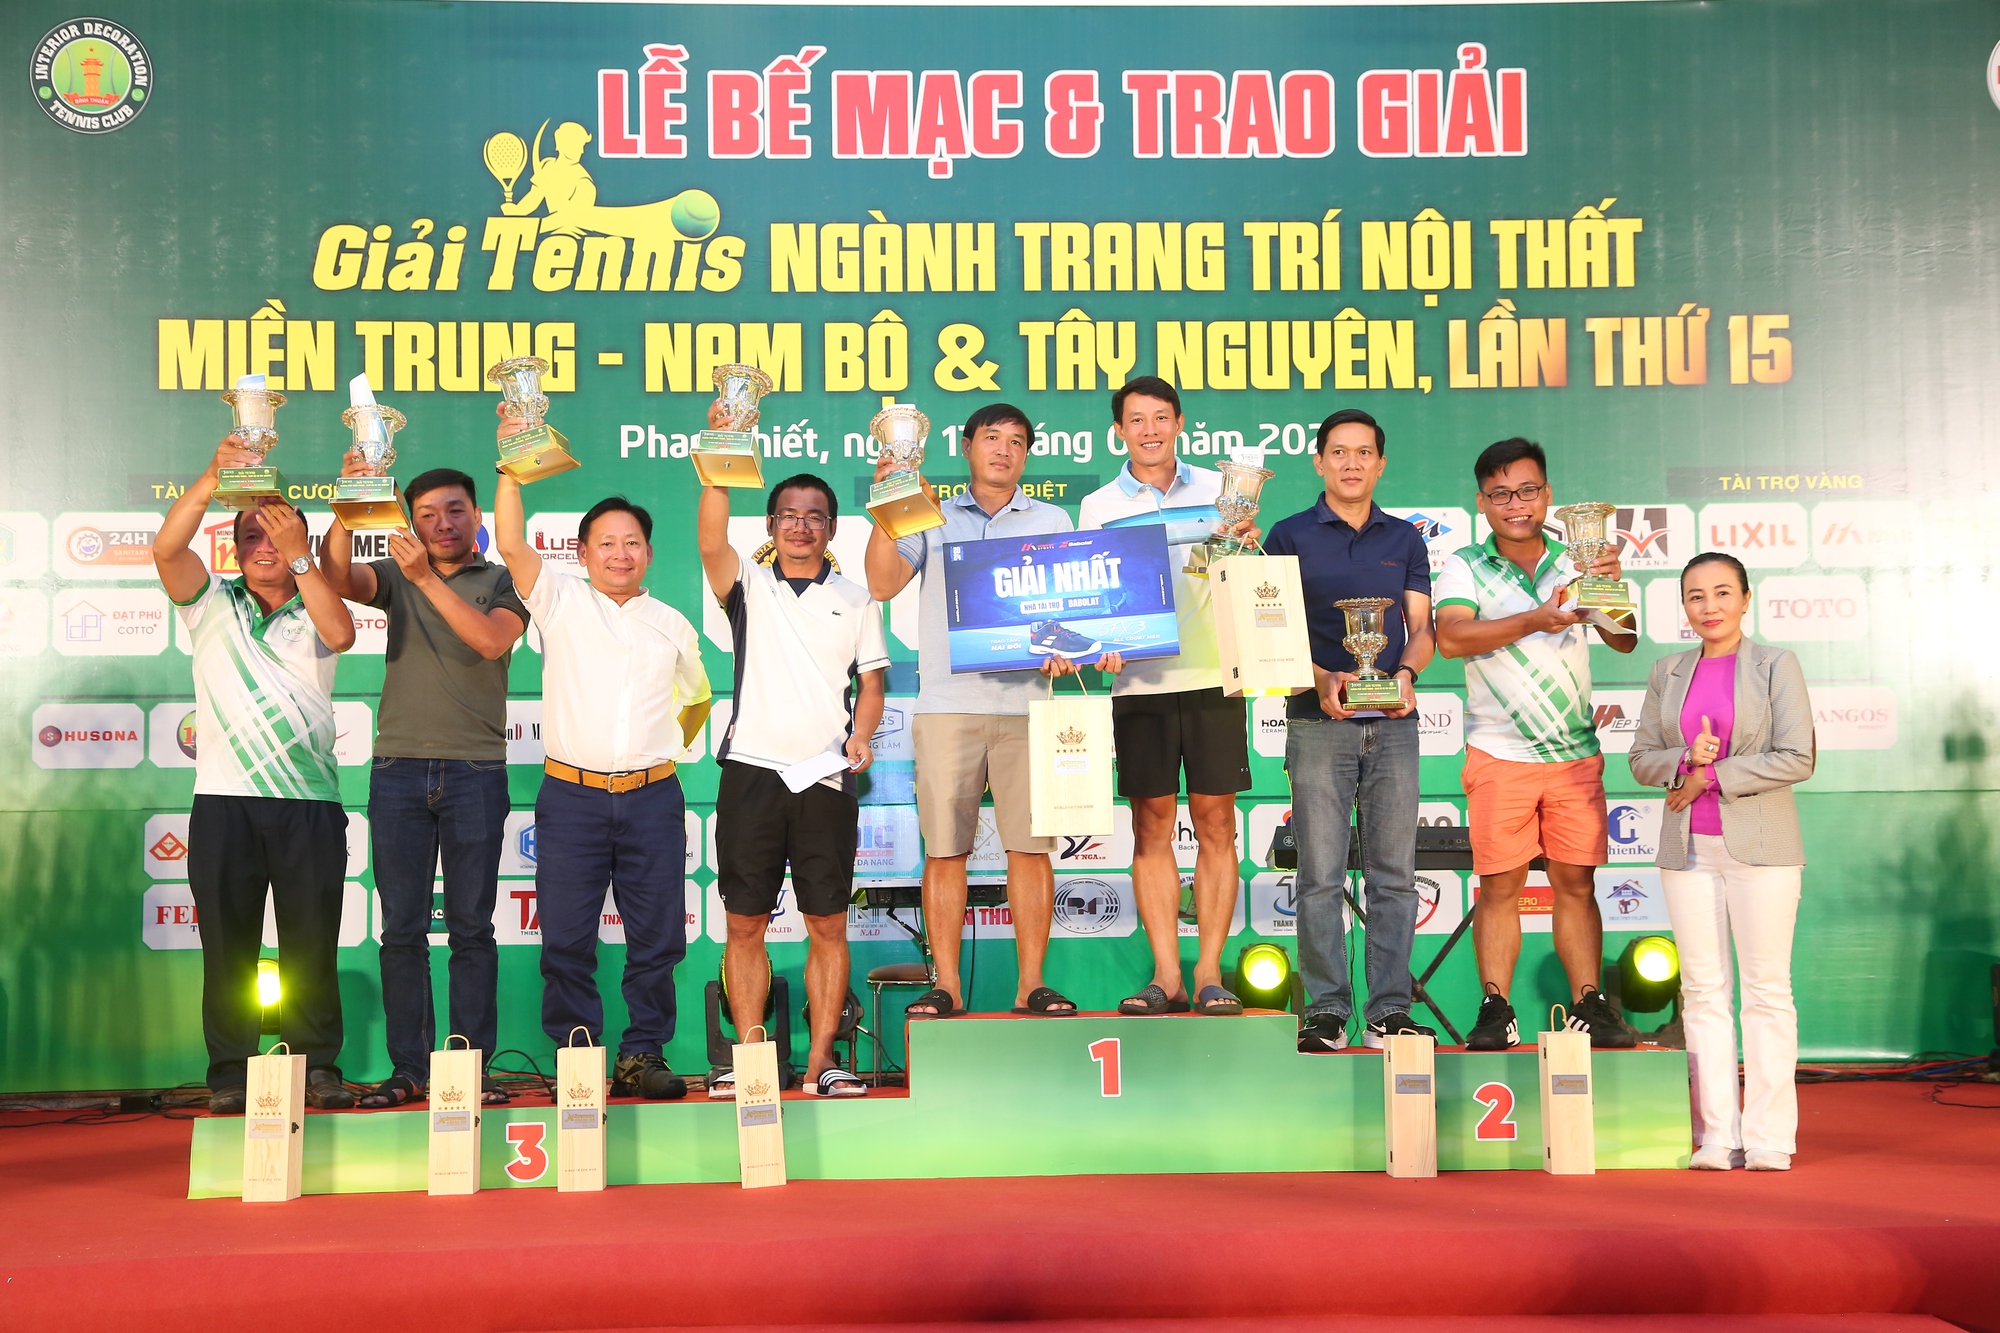 Trao cúp tại giải tennis ngành TTNT miền Trung Nam bộ và Tây Nguyên lần thứ 15 - Ảnh 2.